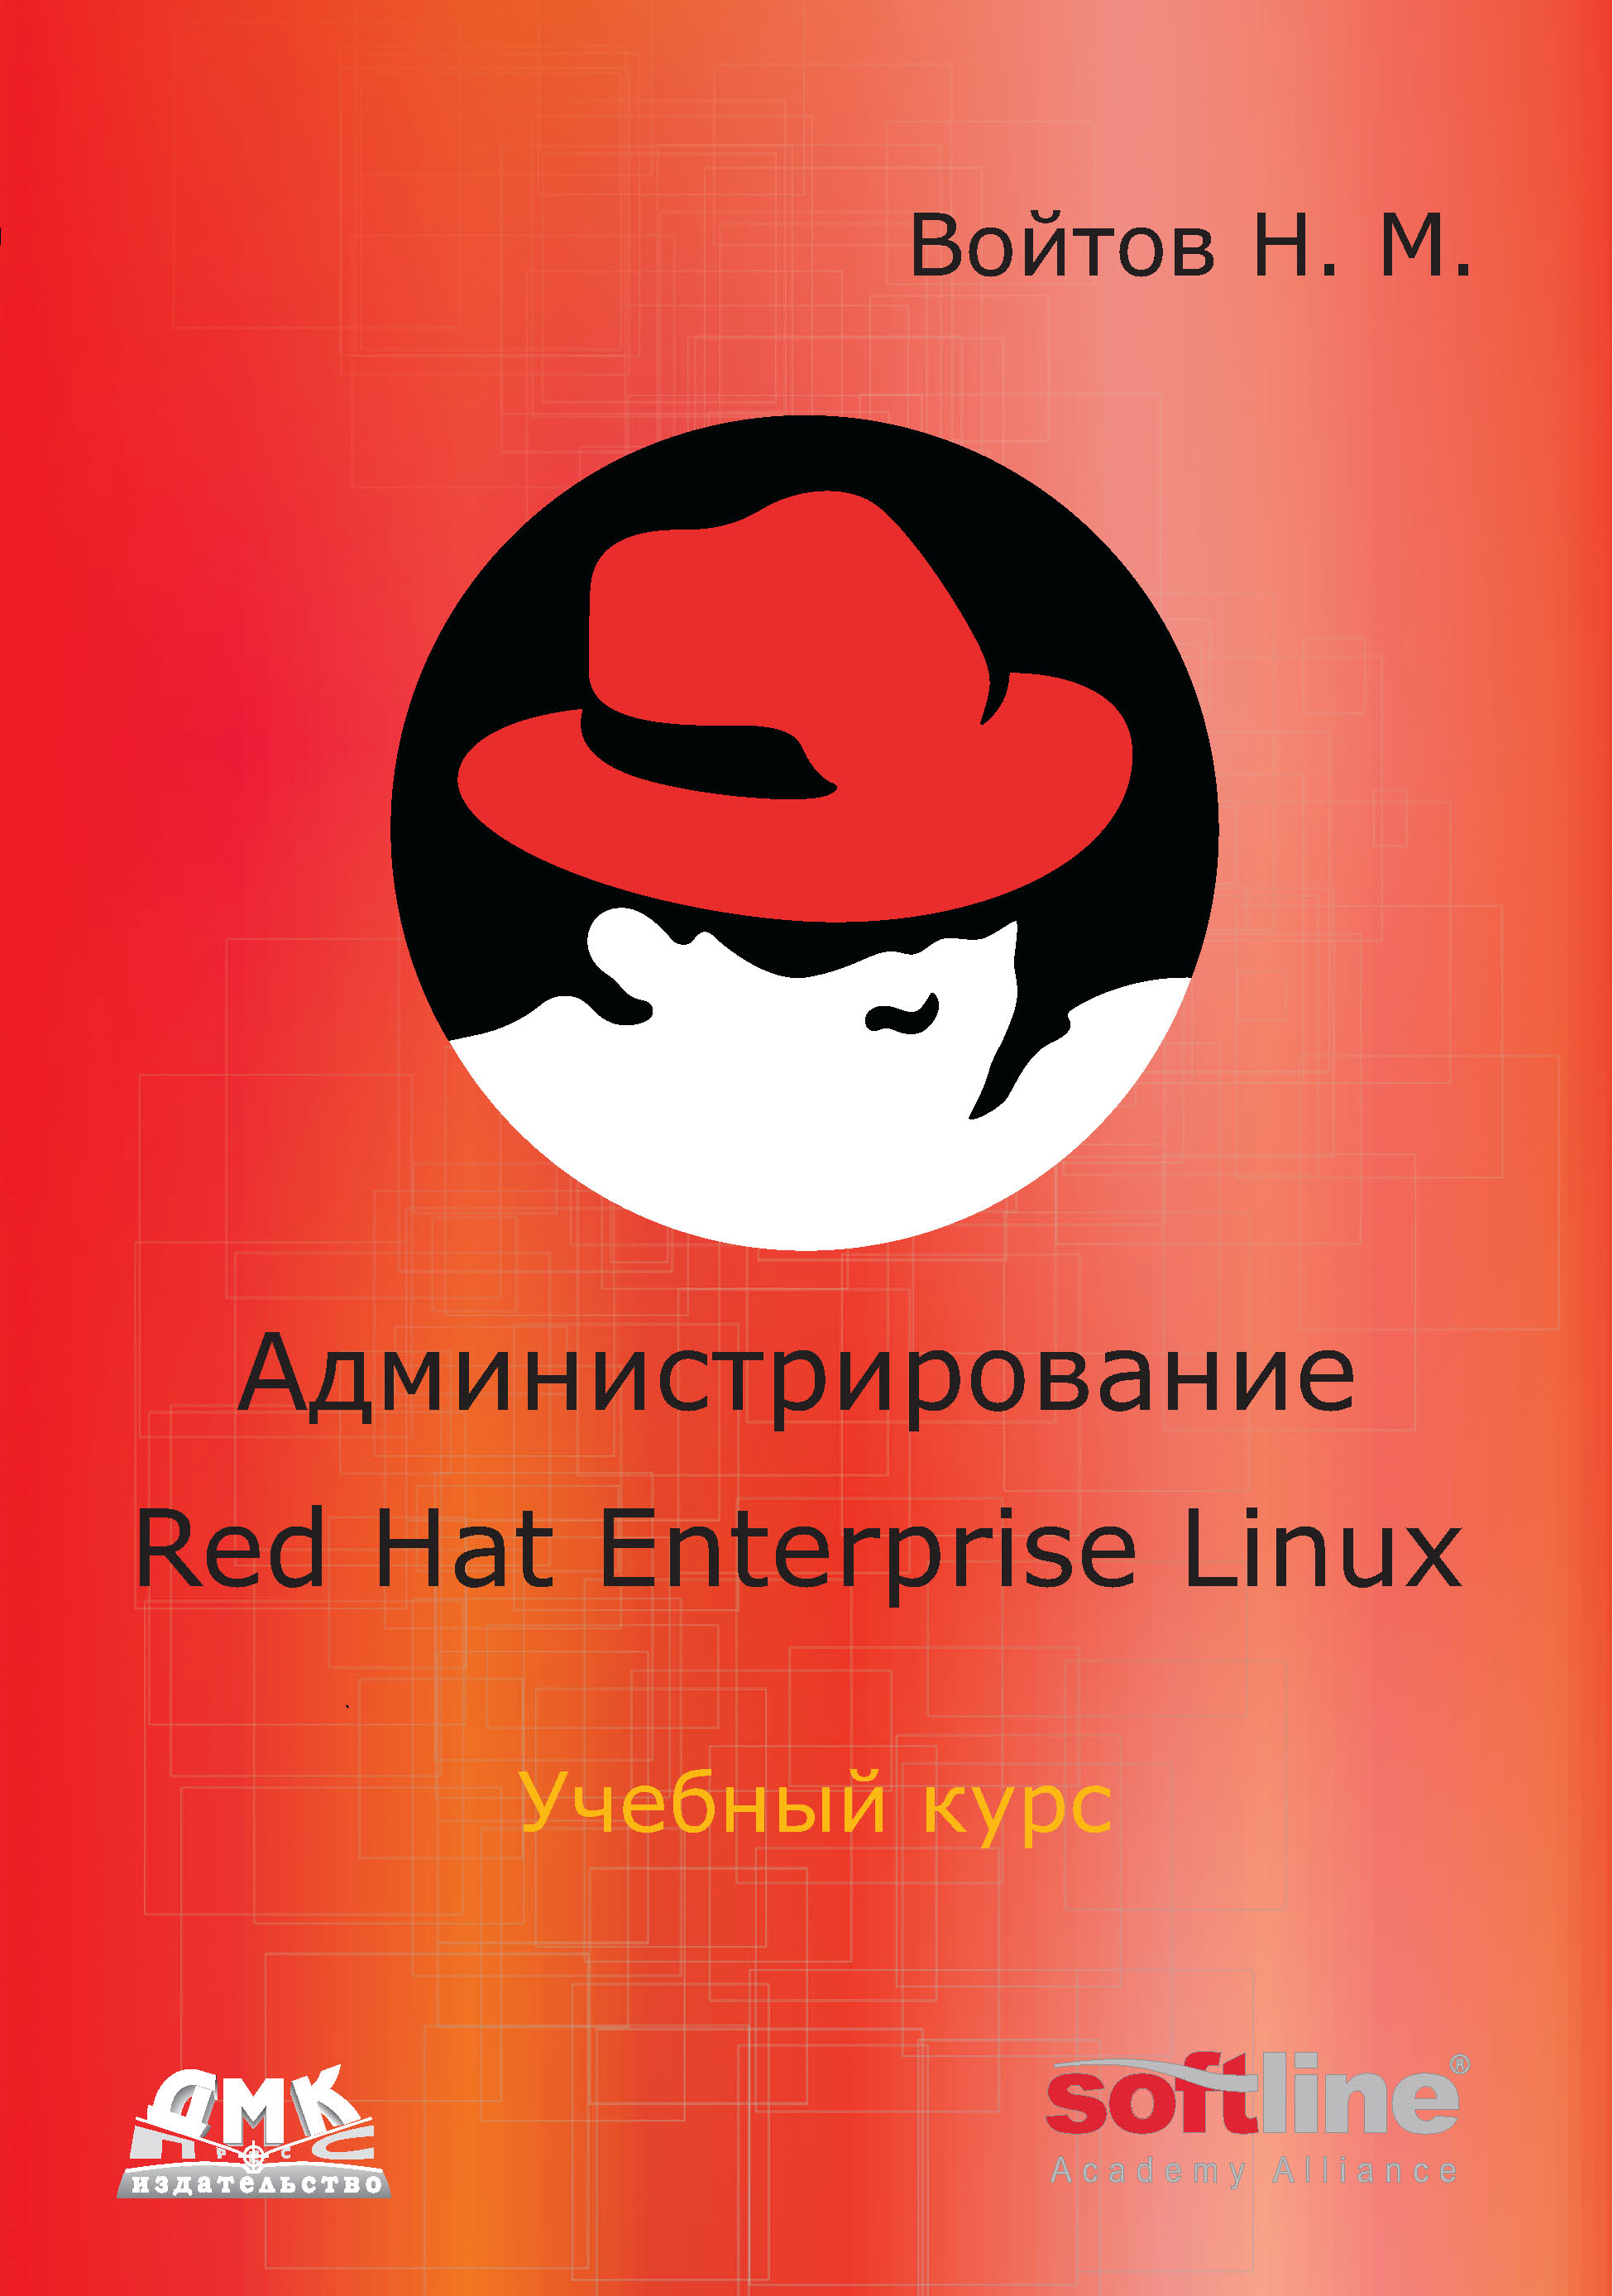 Книга  Администрирование Red Hat Enterprise Linux. Учебный курс созданная Никита Войтов может относится к жанру информационная безопасность, ОС и сети. Стоимость электронной книги Администрирование Red Hat Enterprise Linux. Учебный курс с идентификатором 22072850 составляет 175.00 руб.